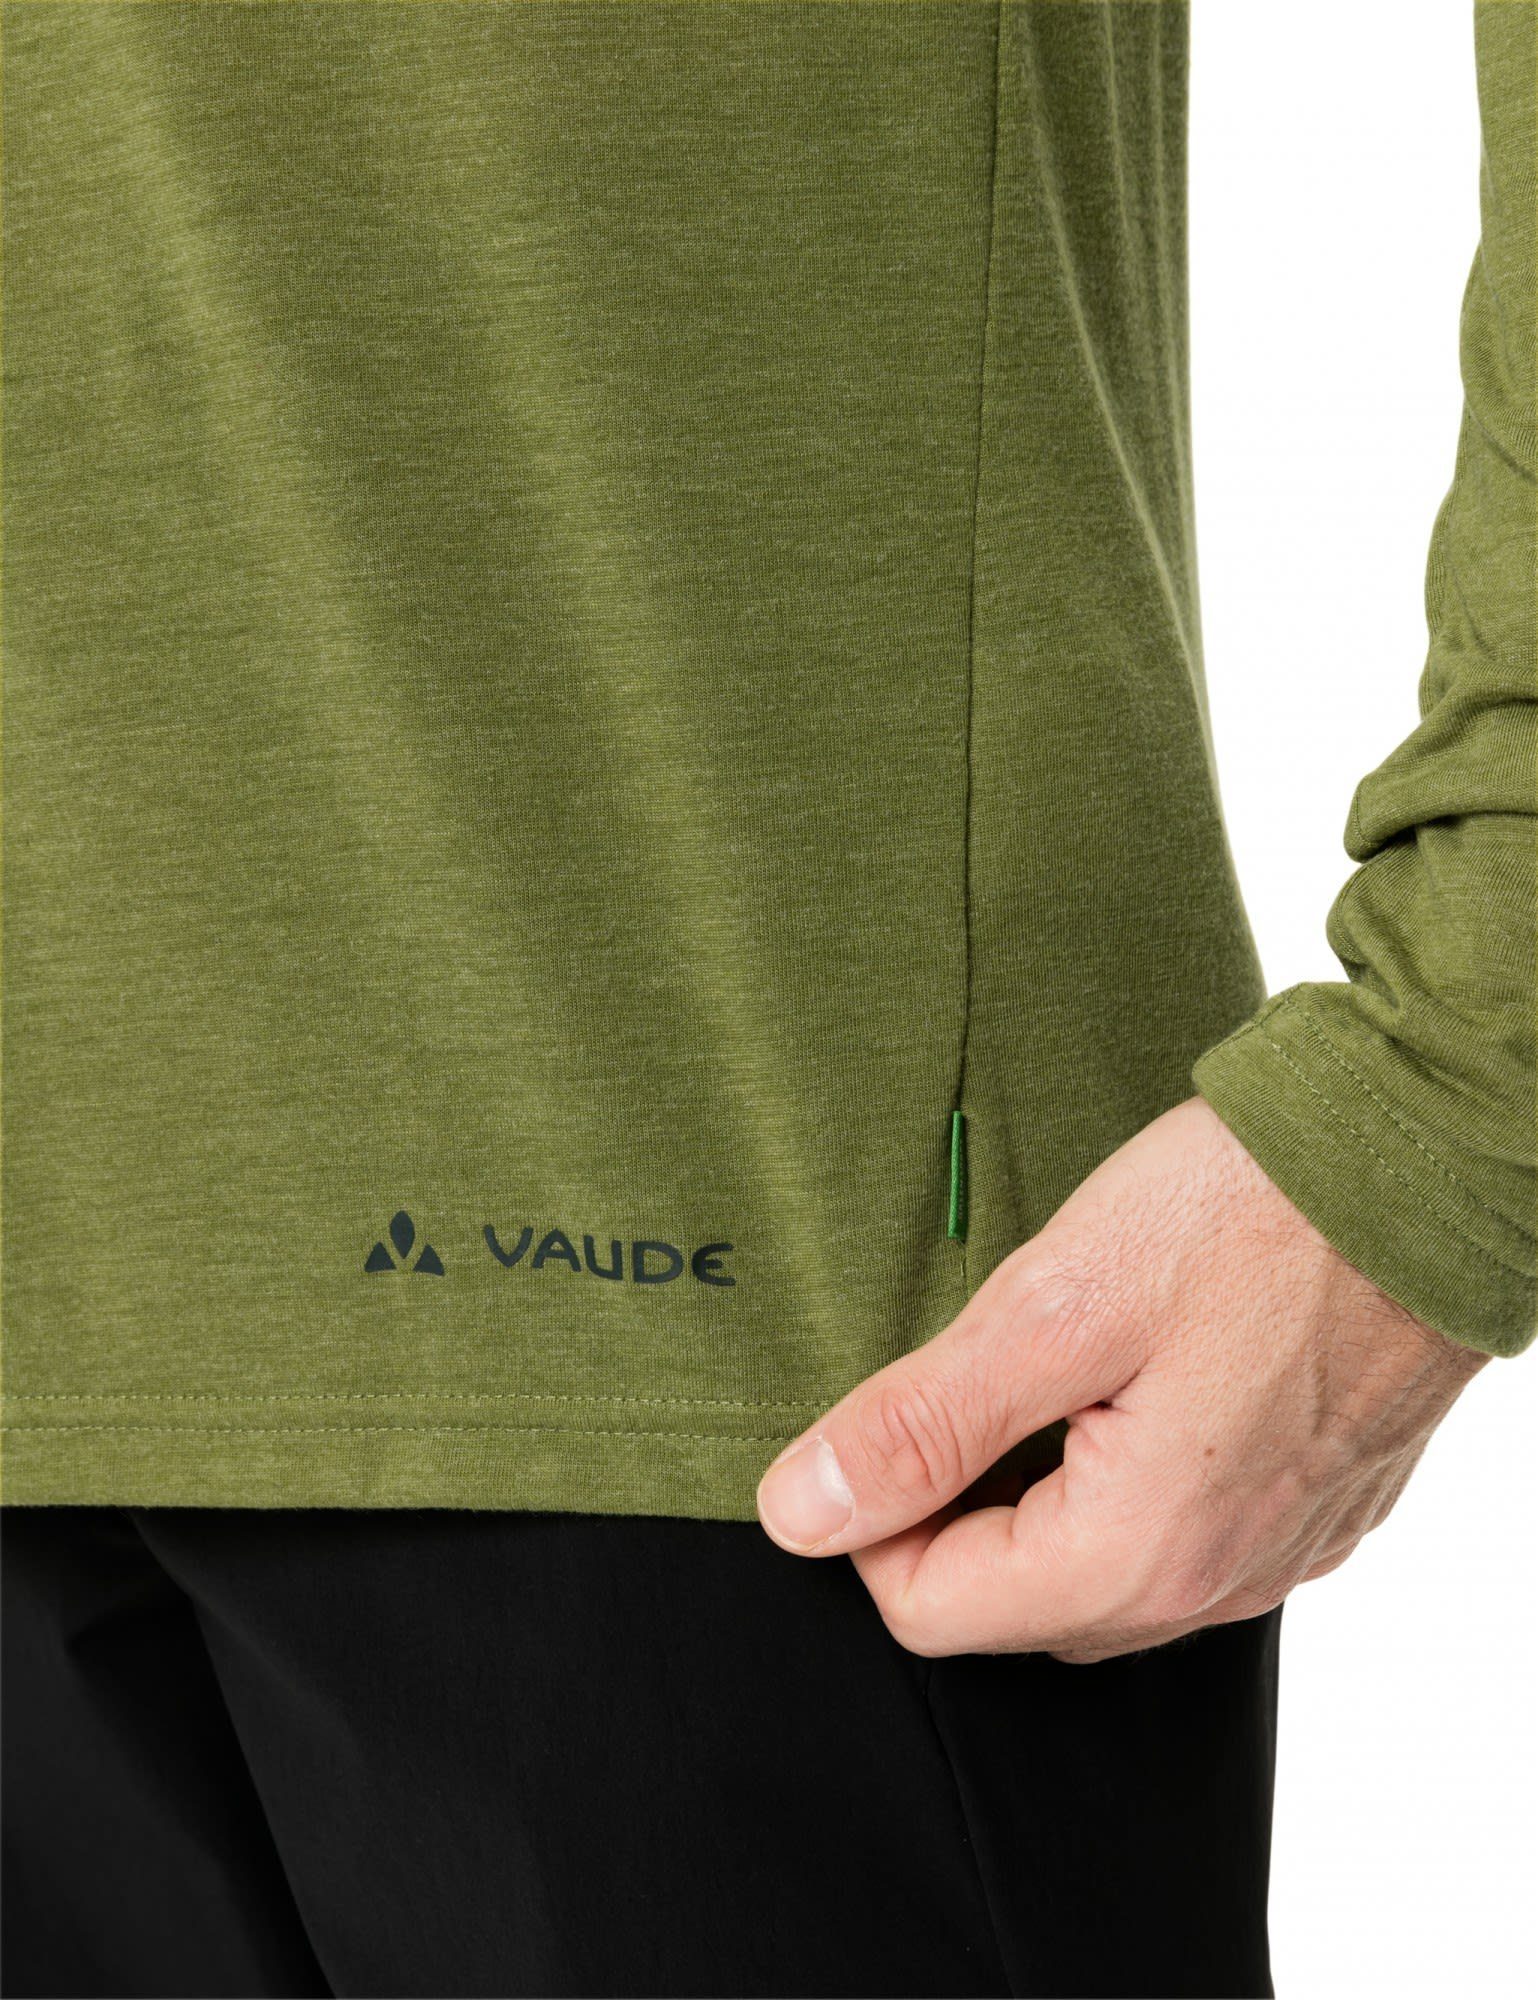 VAUDE Langarmshirt Rosemoor T-shirt Vaude Iii Avocado Long-sleeve Herren Mens